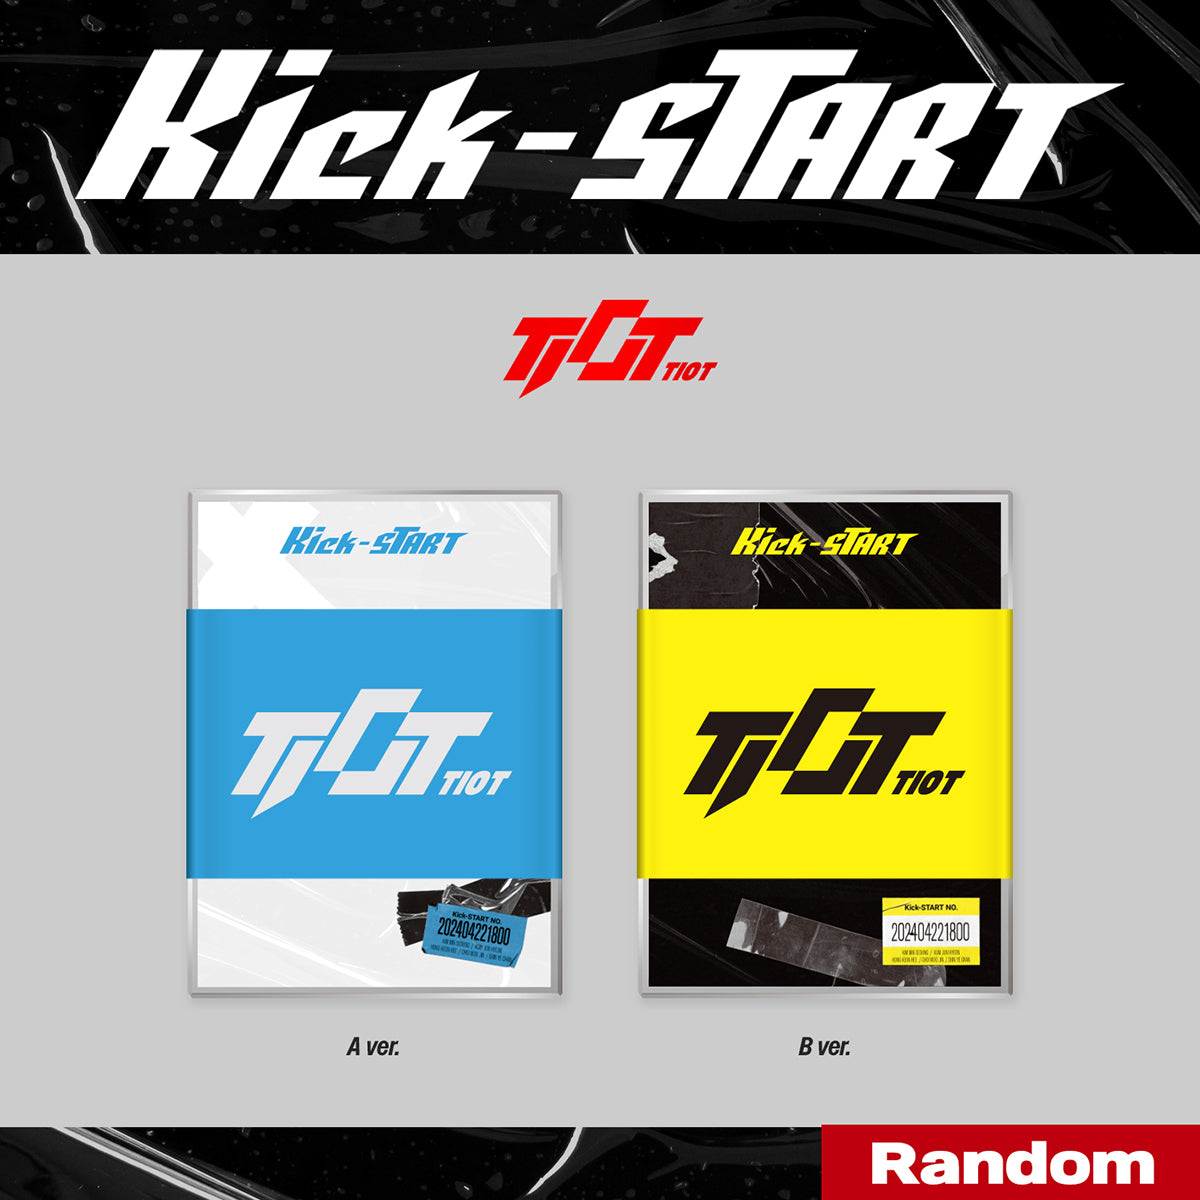 TIOT - Kick-START (PLVE Ver.) (Random) [PRE-ORDER]